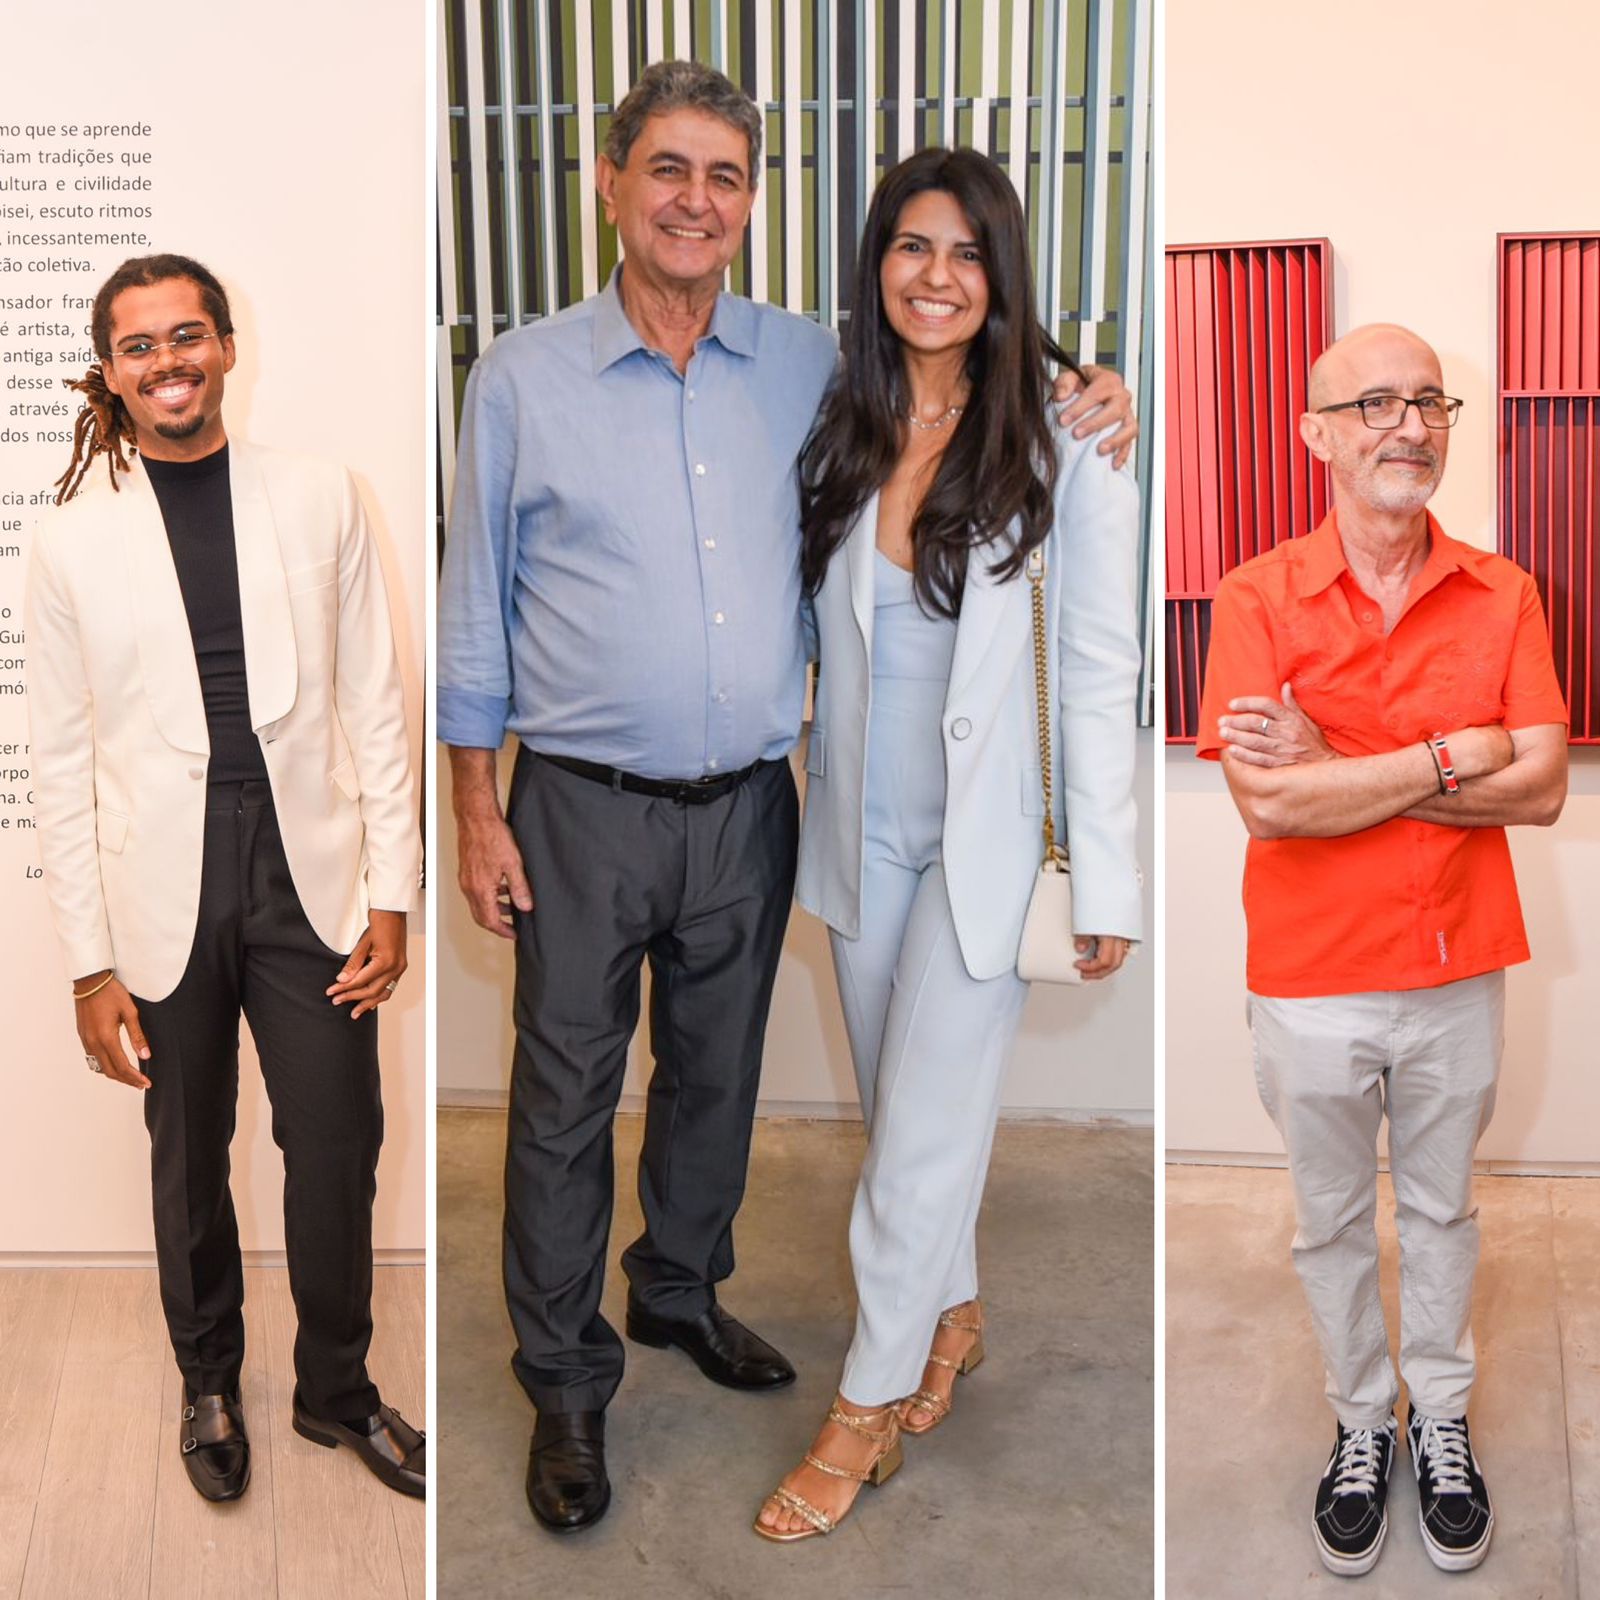 Paulo Darzé Galeria movimenta cena artística de Salvador com abertura de duas exposições; veja as fotos